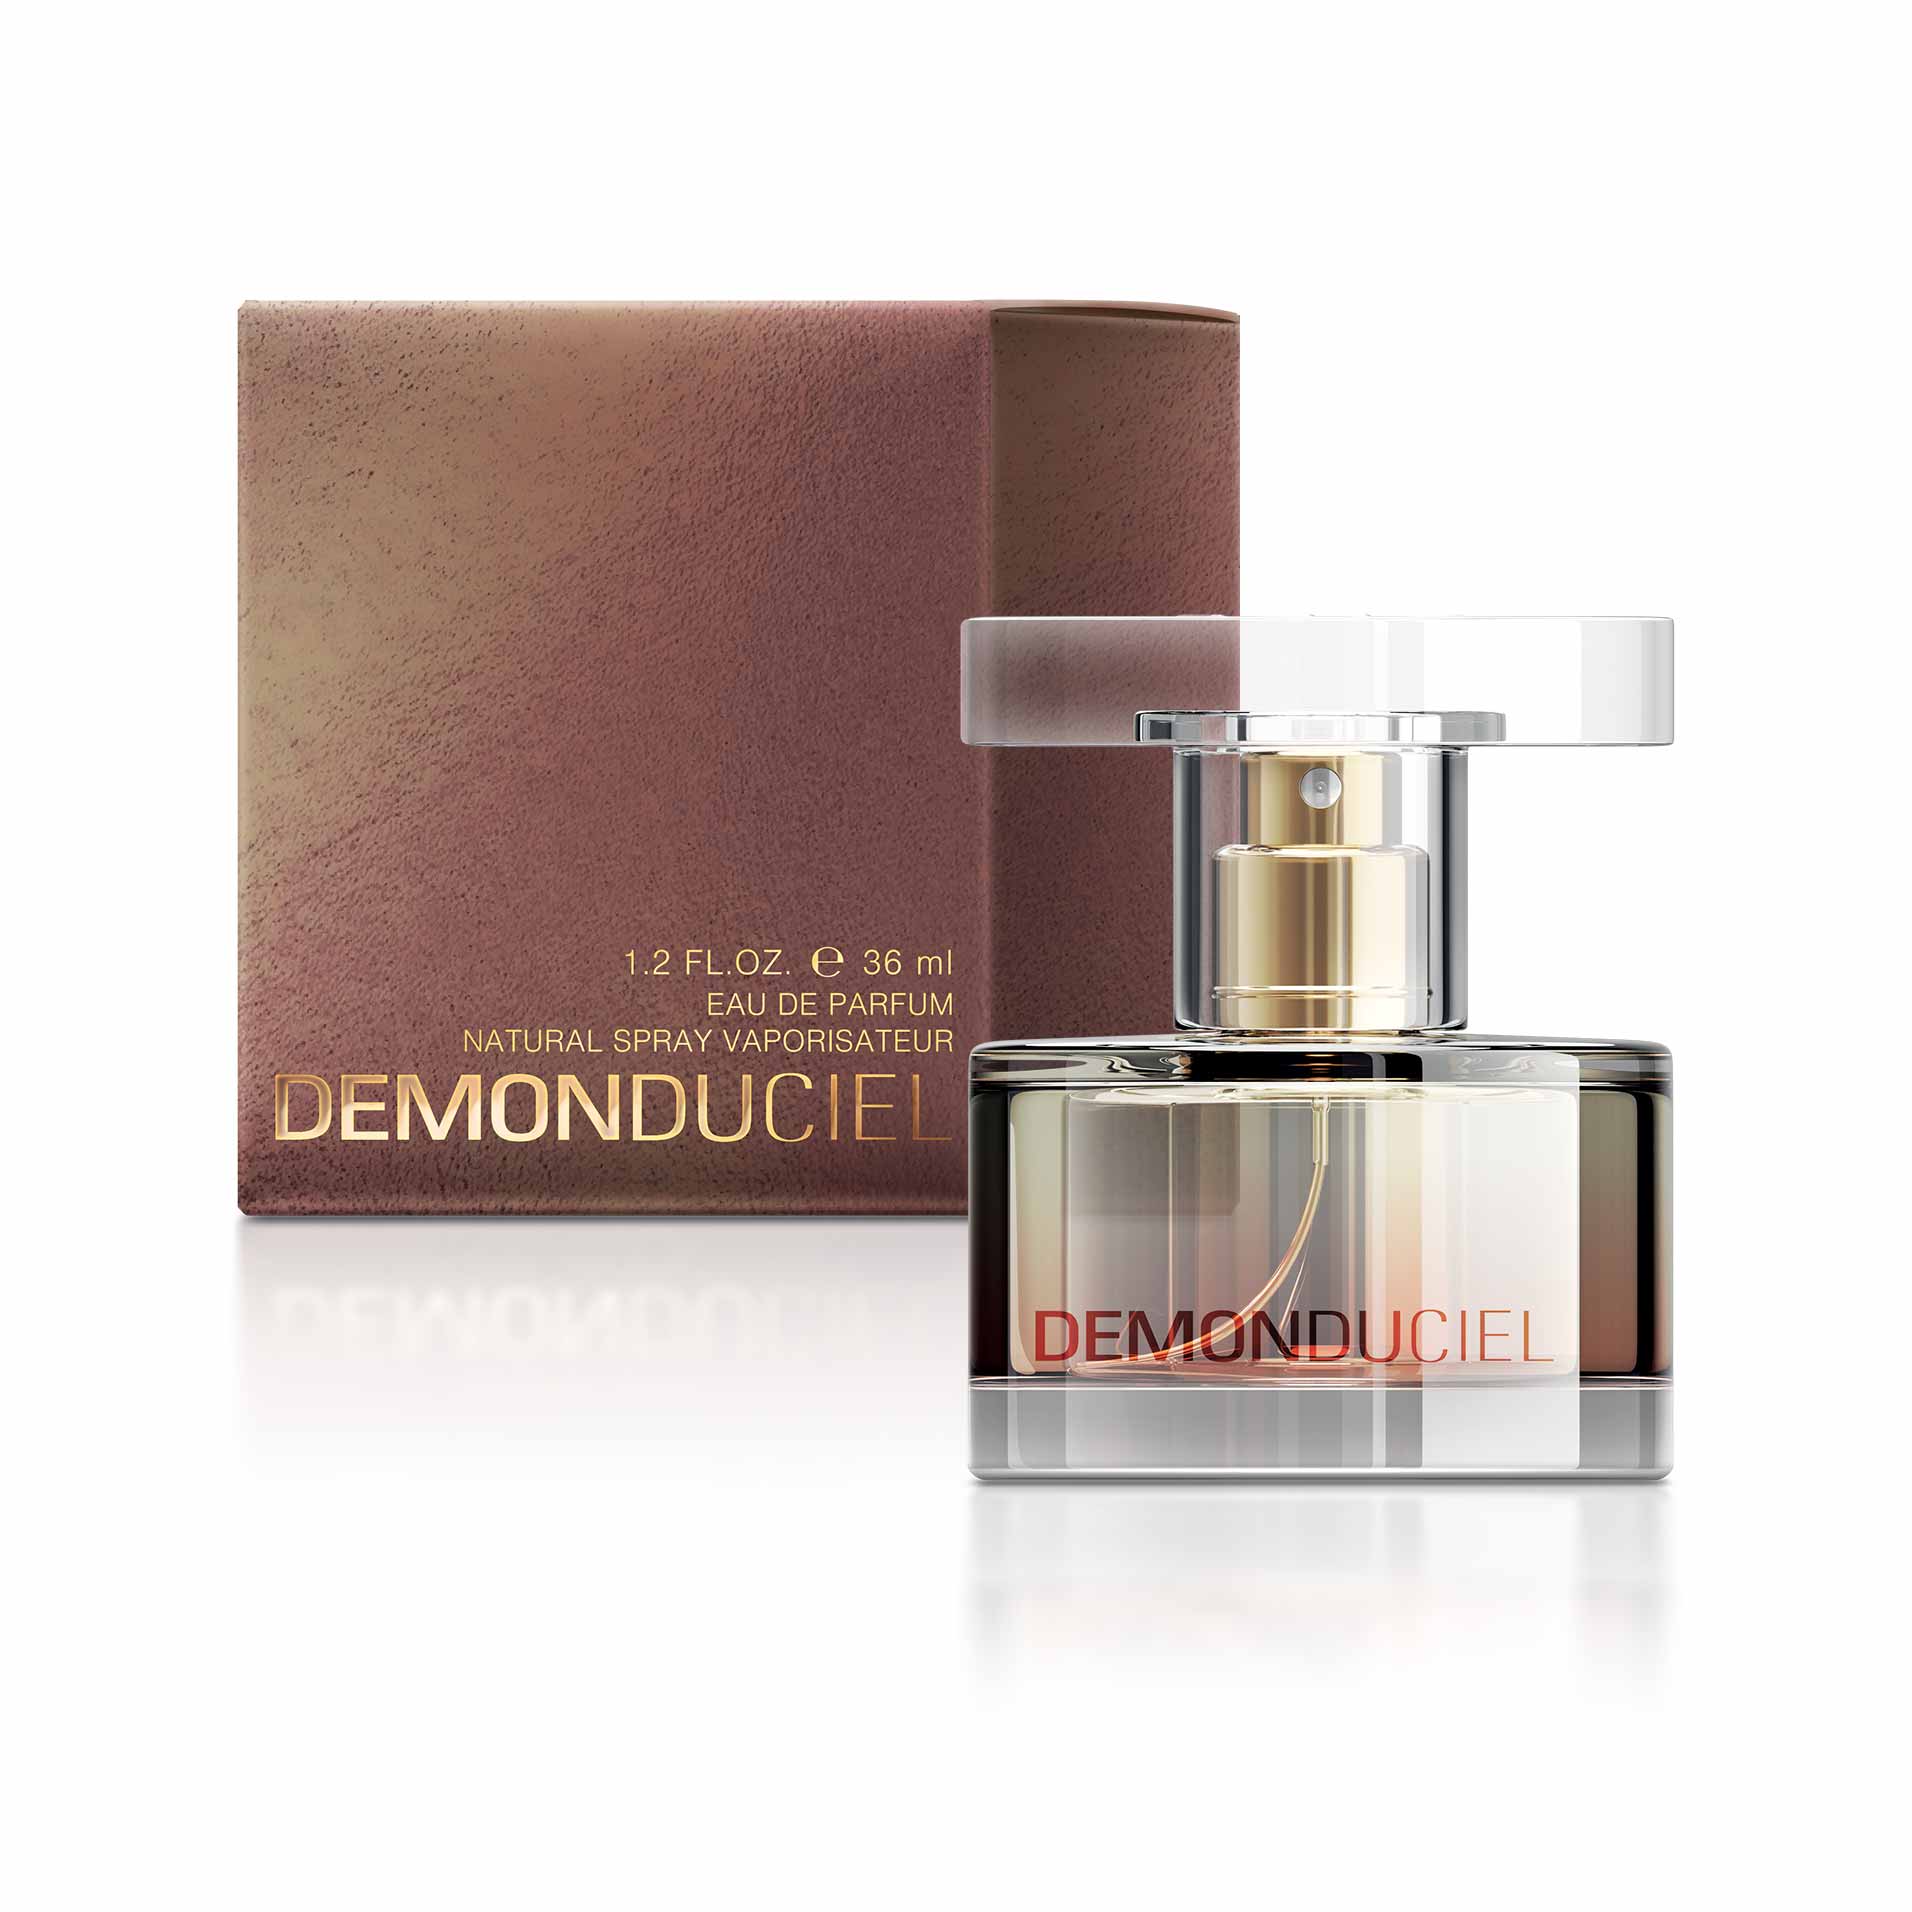 Коллекция ароматов Ciel - Demon du Ciel, парфюмерная вода для женщин